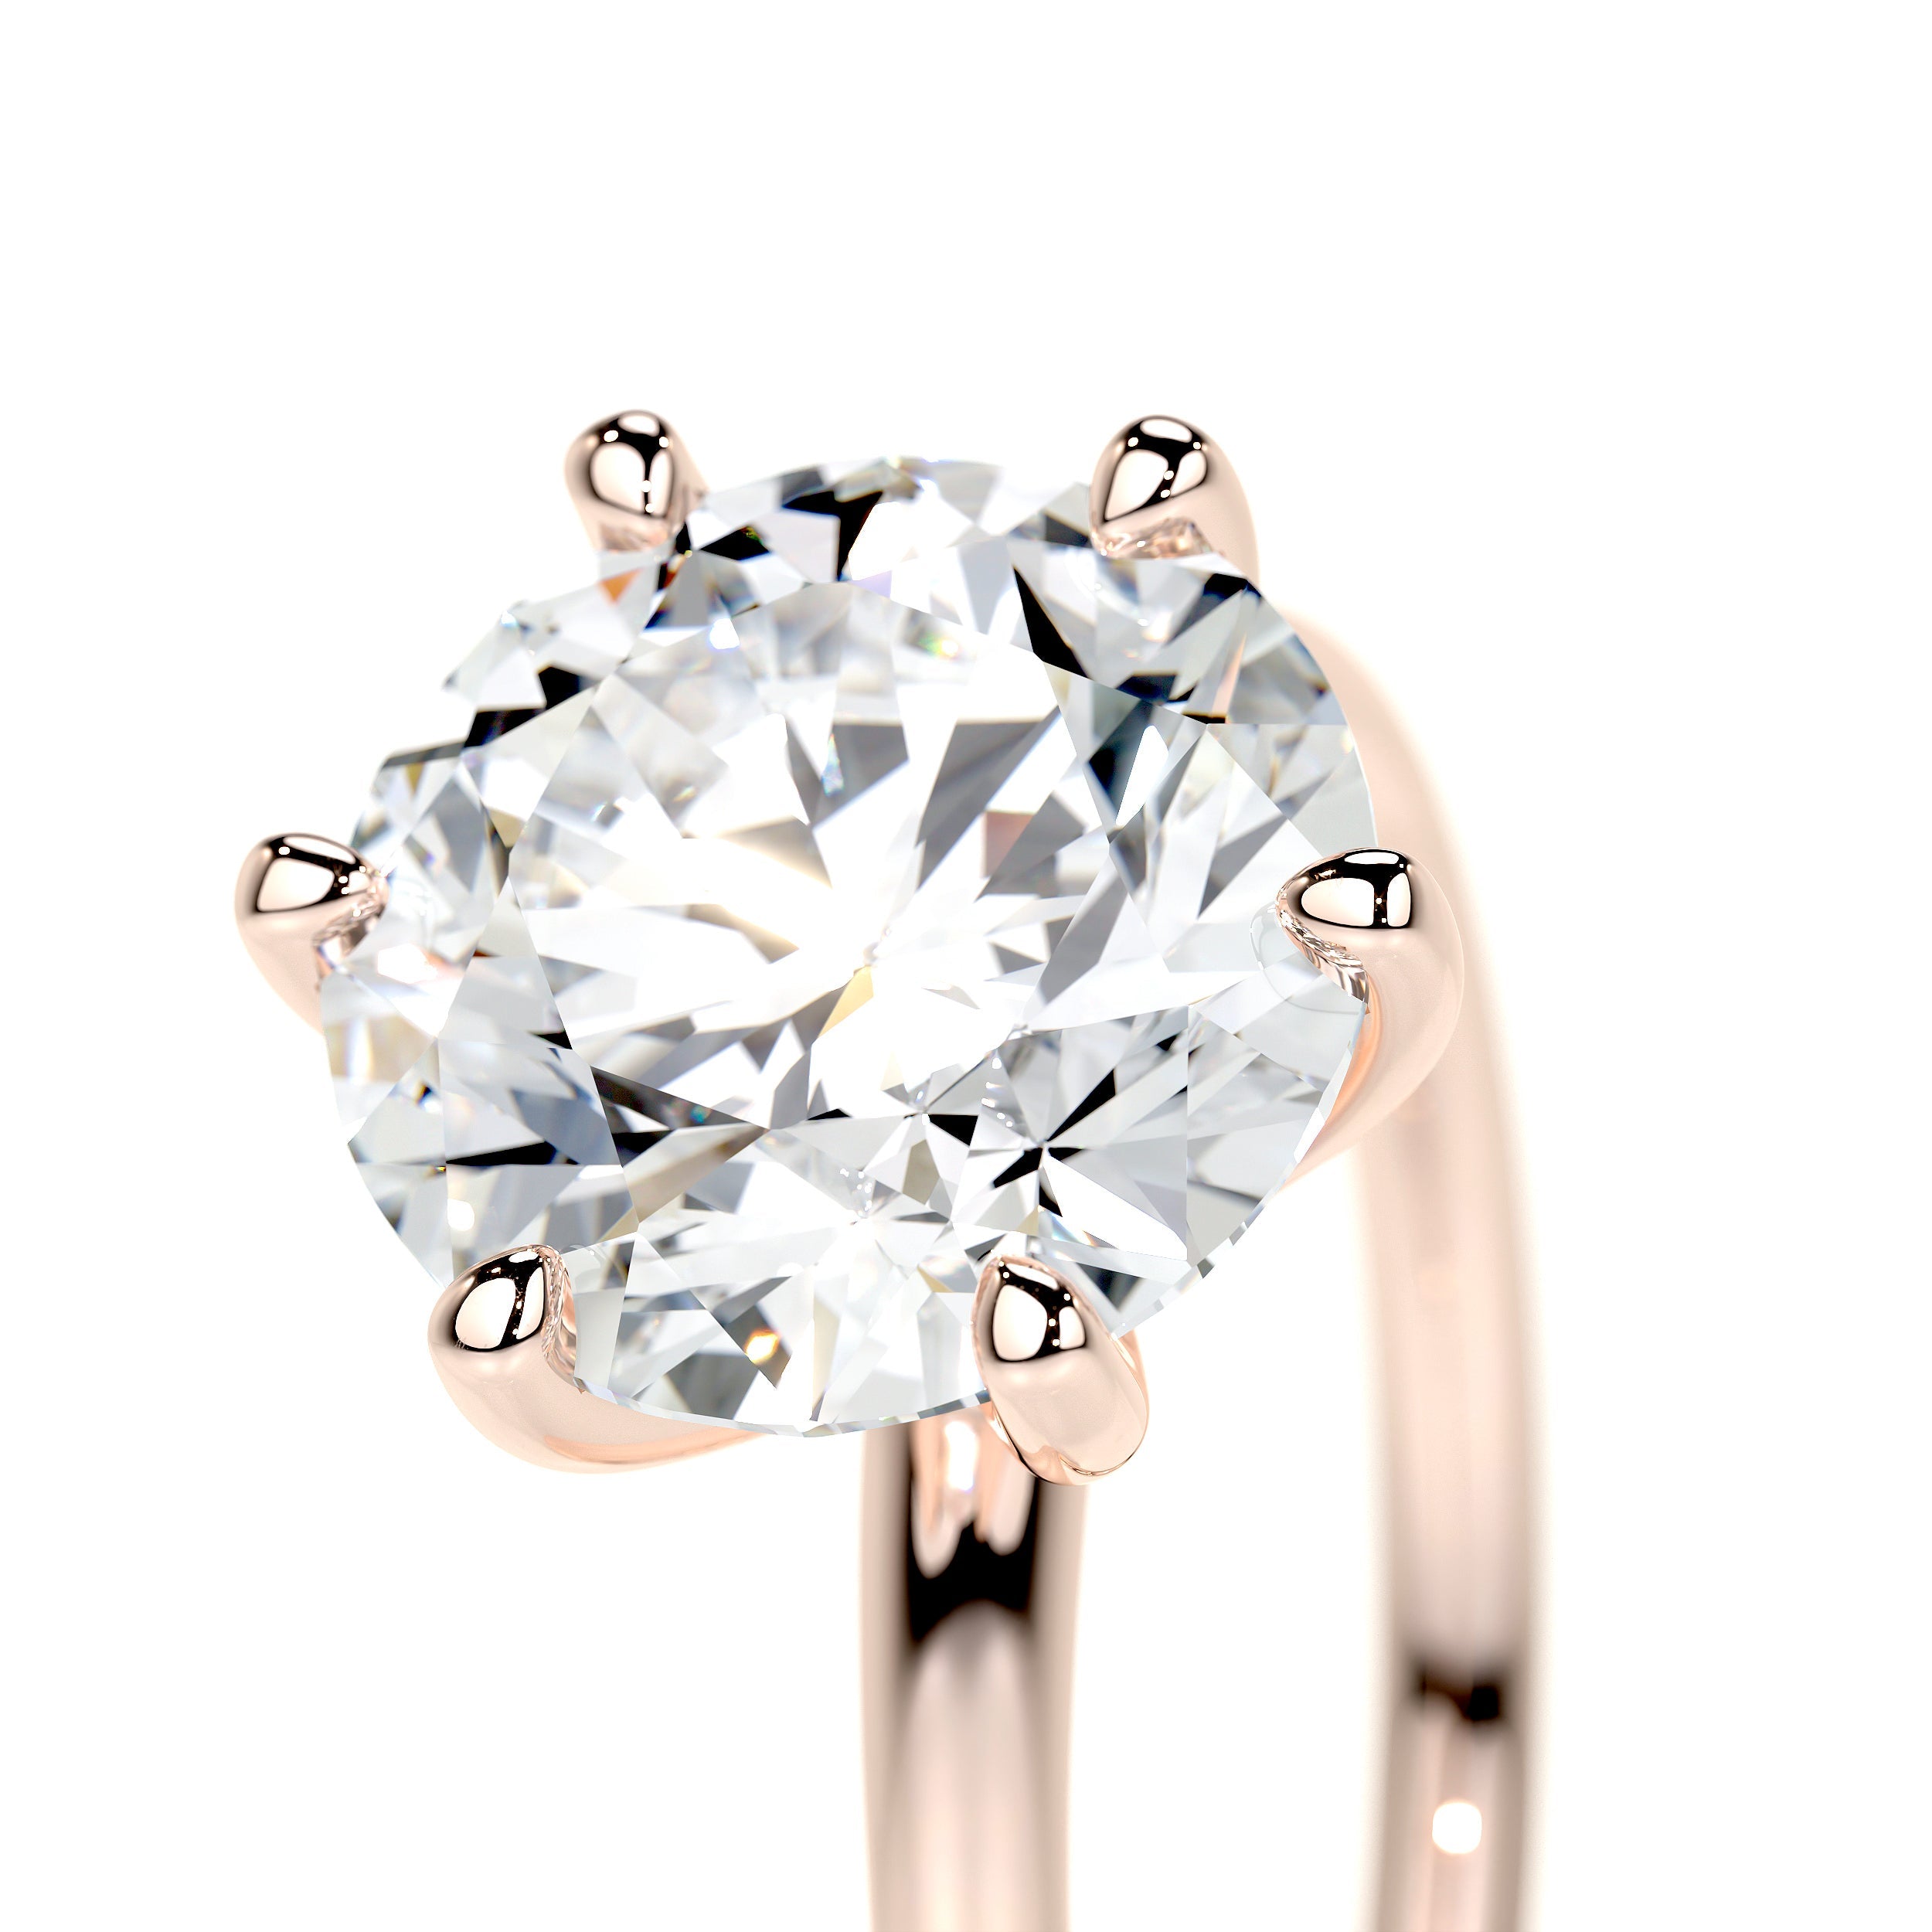 Eloise Lab Grown Diamond Ring   (2 Carat) -14K Rose Gold